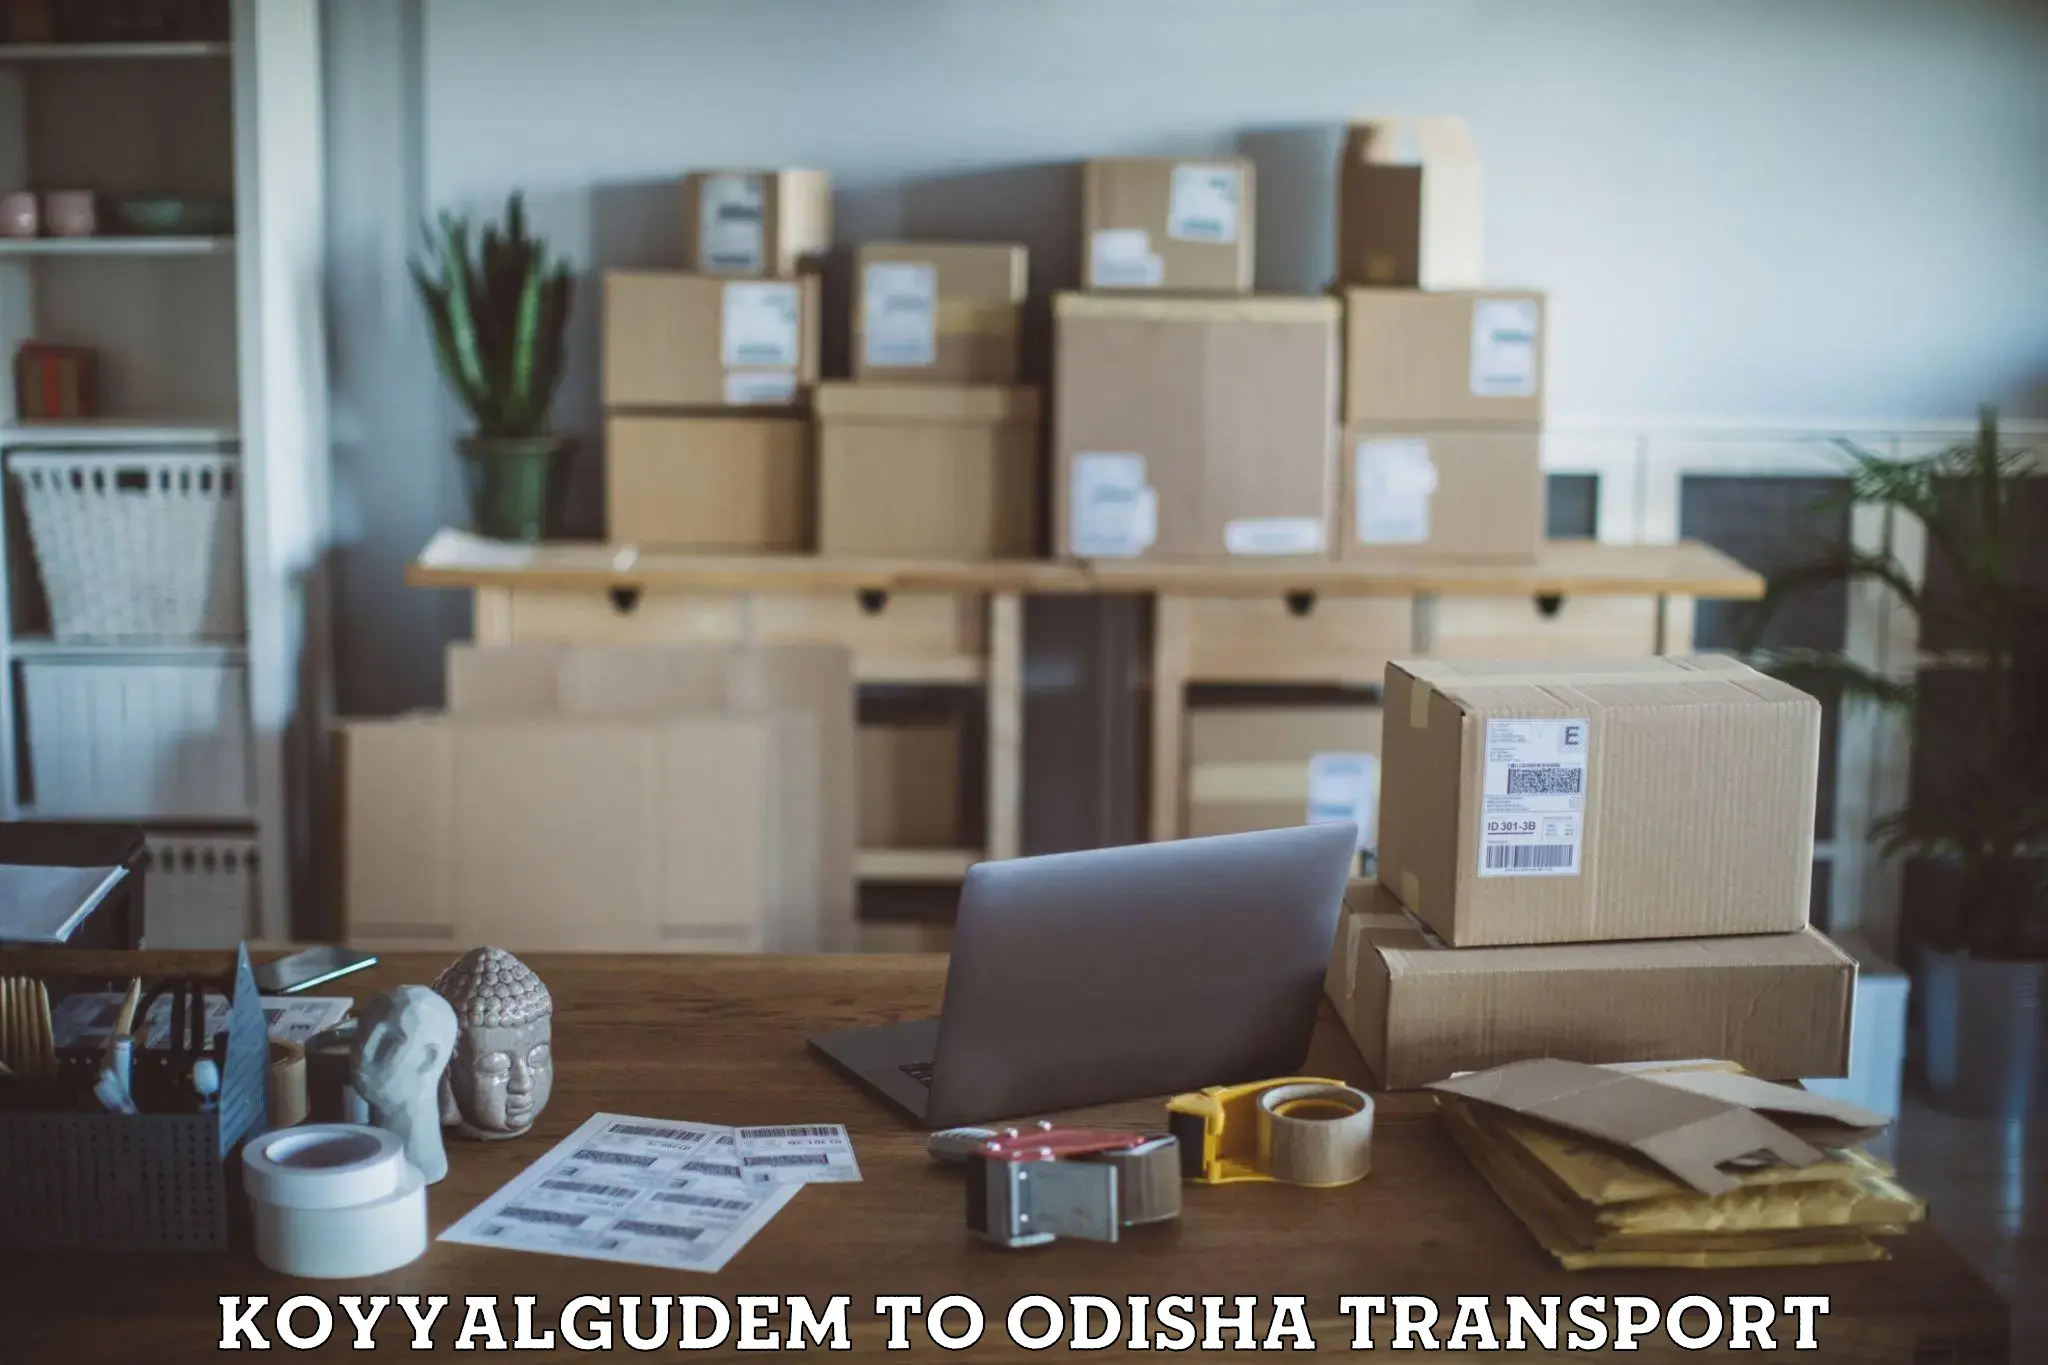 Daily parcel service transport Koyyalgudem to Tihidi